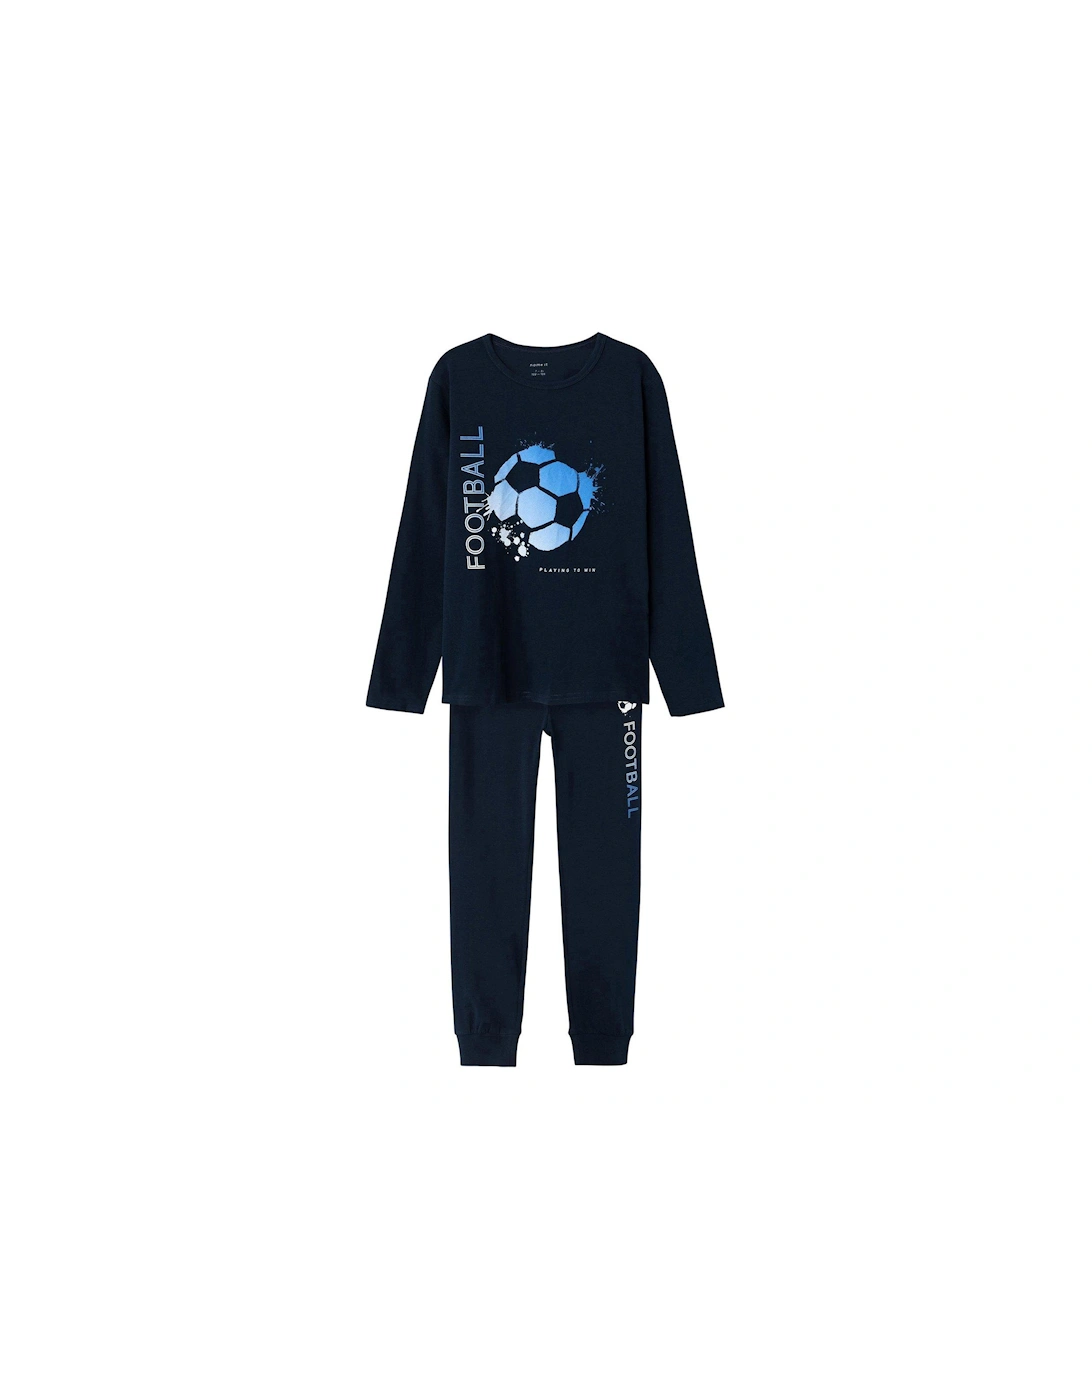 Boys Football Pyjamas - Dark Sapphire, 3 of 2